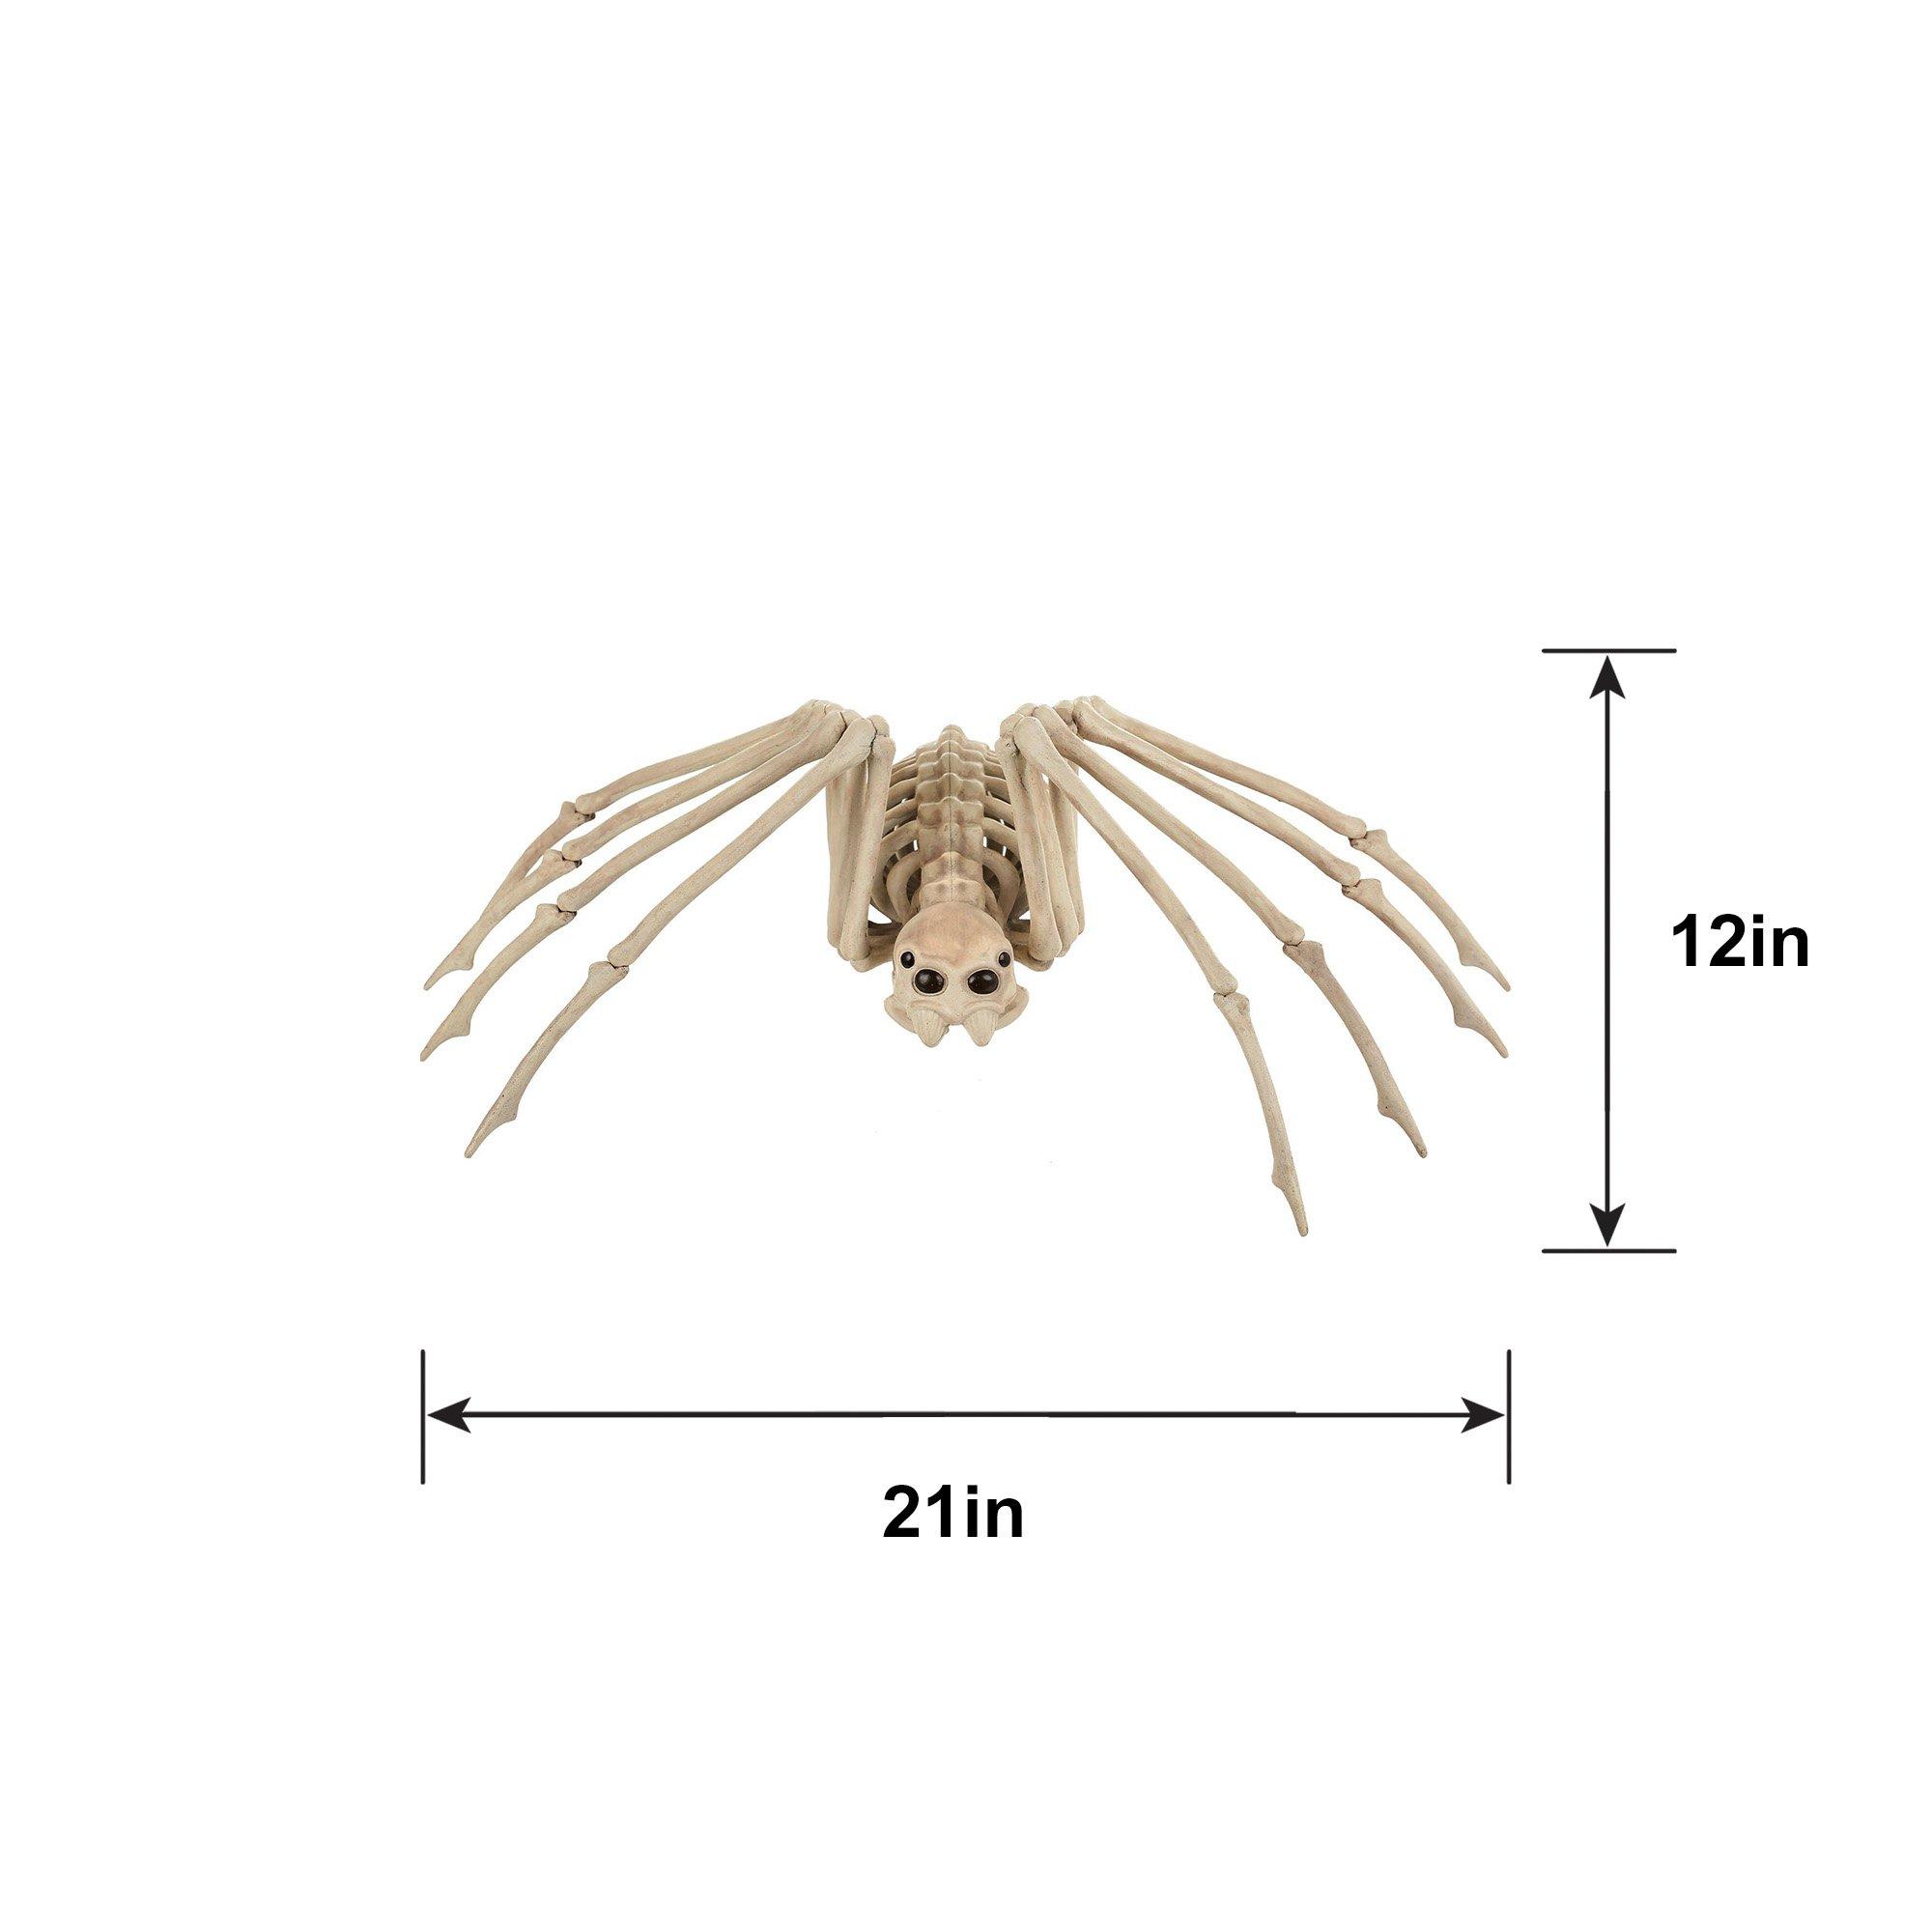 Skeleton Spider Decoration, 21in x 12in